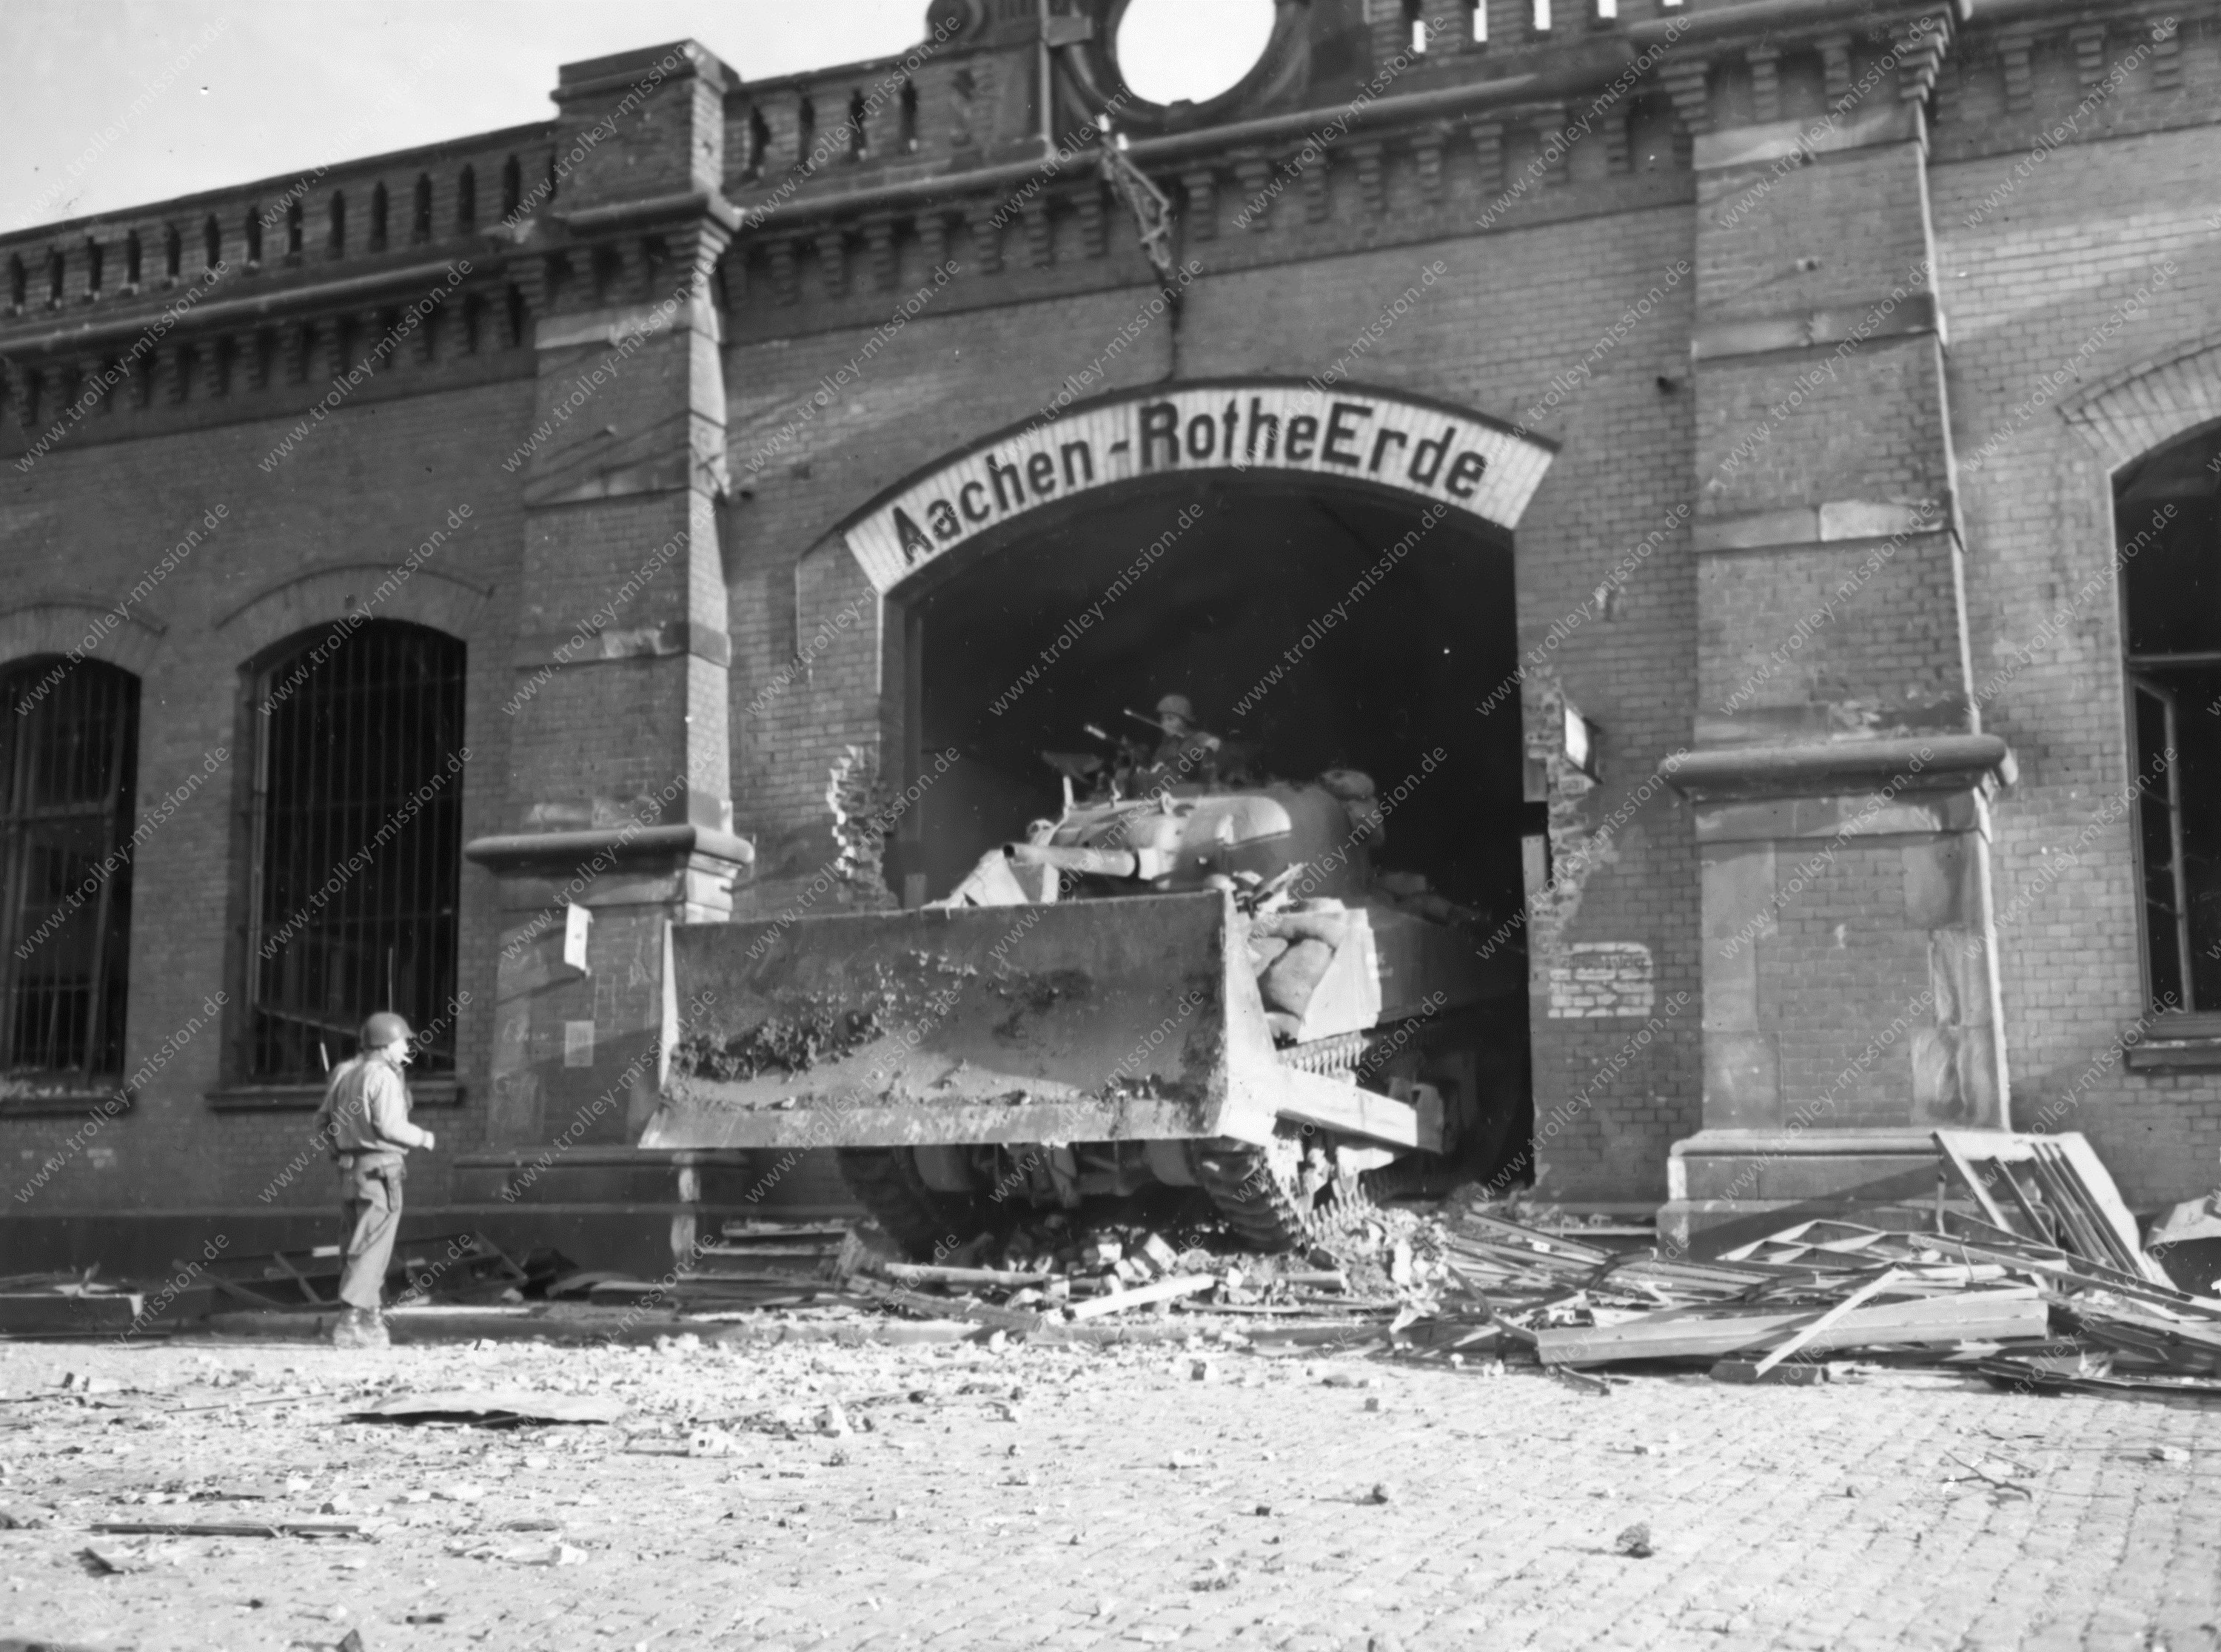 Panzer am Bahnhof Rothe Erde - Aachen im Zweiten Weltkrieg